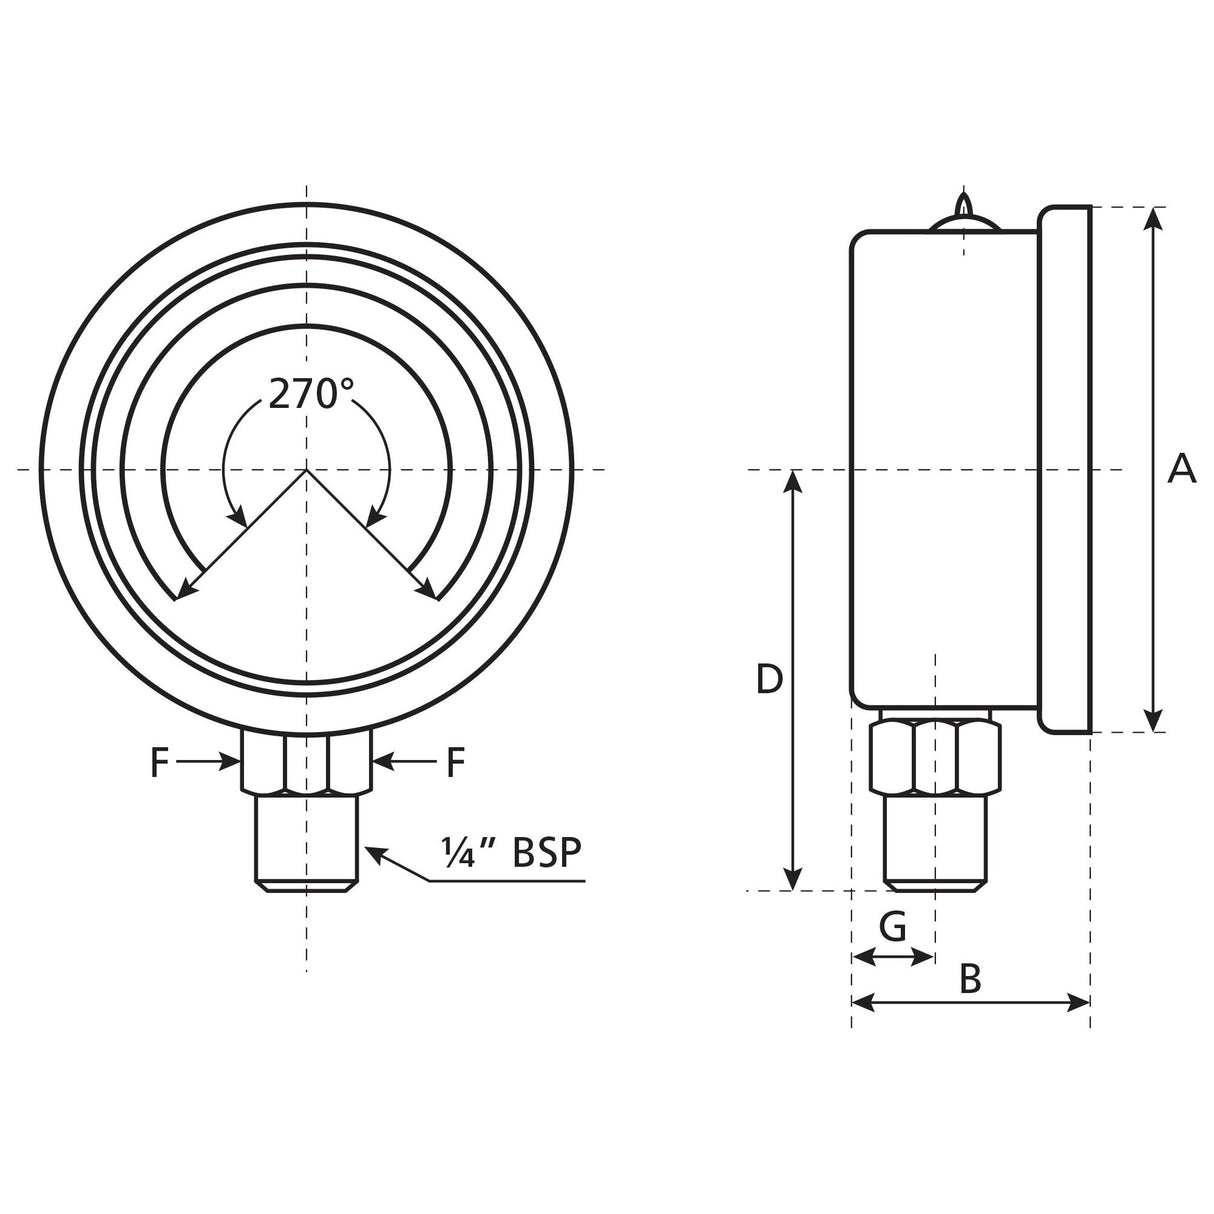 Hydraulic Pressure Gauge⌀63mm (0-1000 Bar)
 - S.154021 - Farming Parts